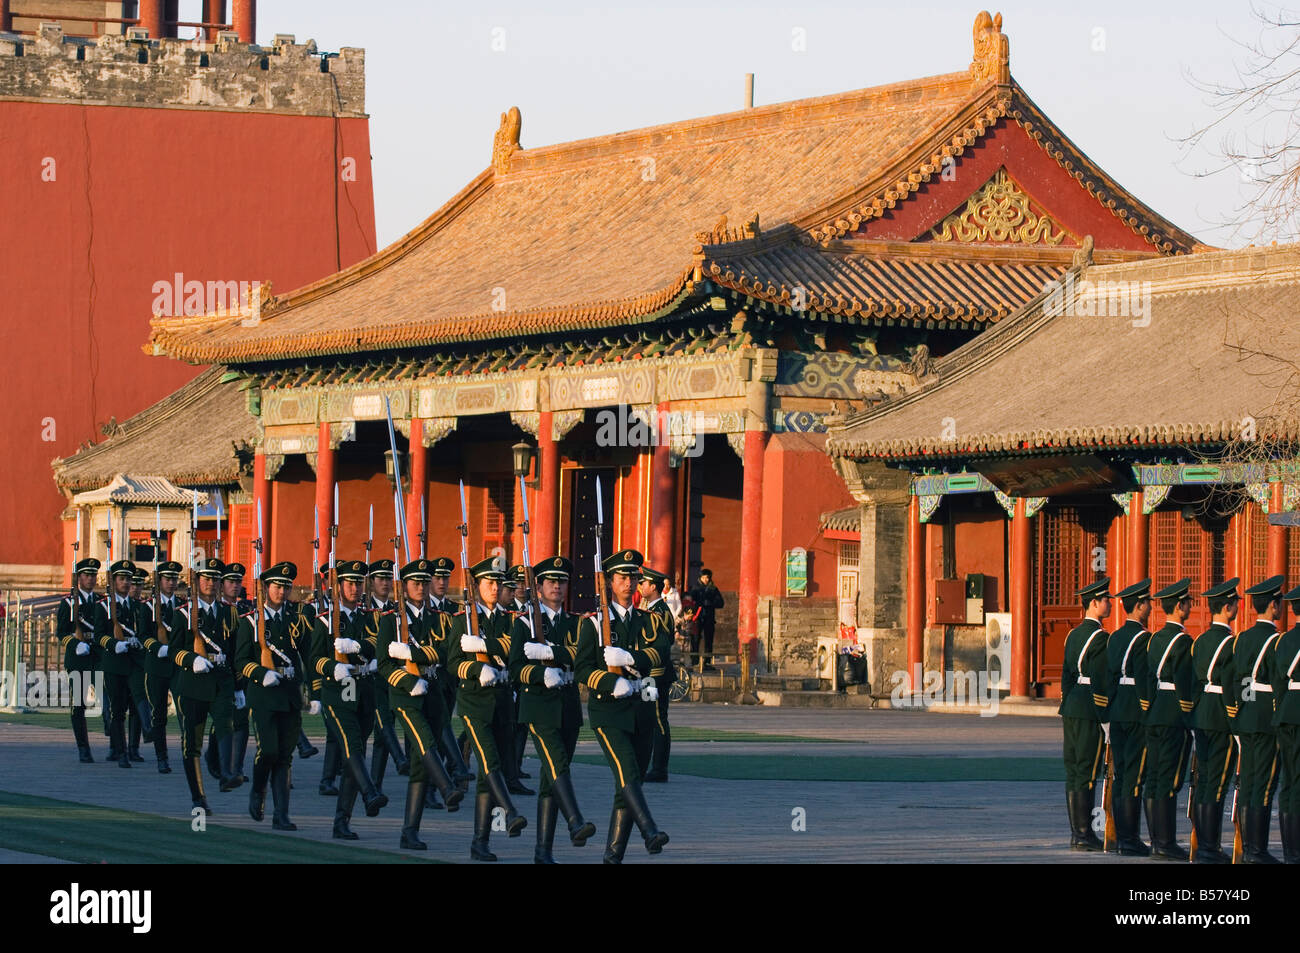 Militaires les soldats marchant à l'extérieur de la foret interdite City Palace Museum, UNESCO World Heritage Site, Beijing, China, Asia Banque D'Images